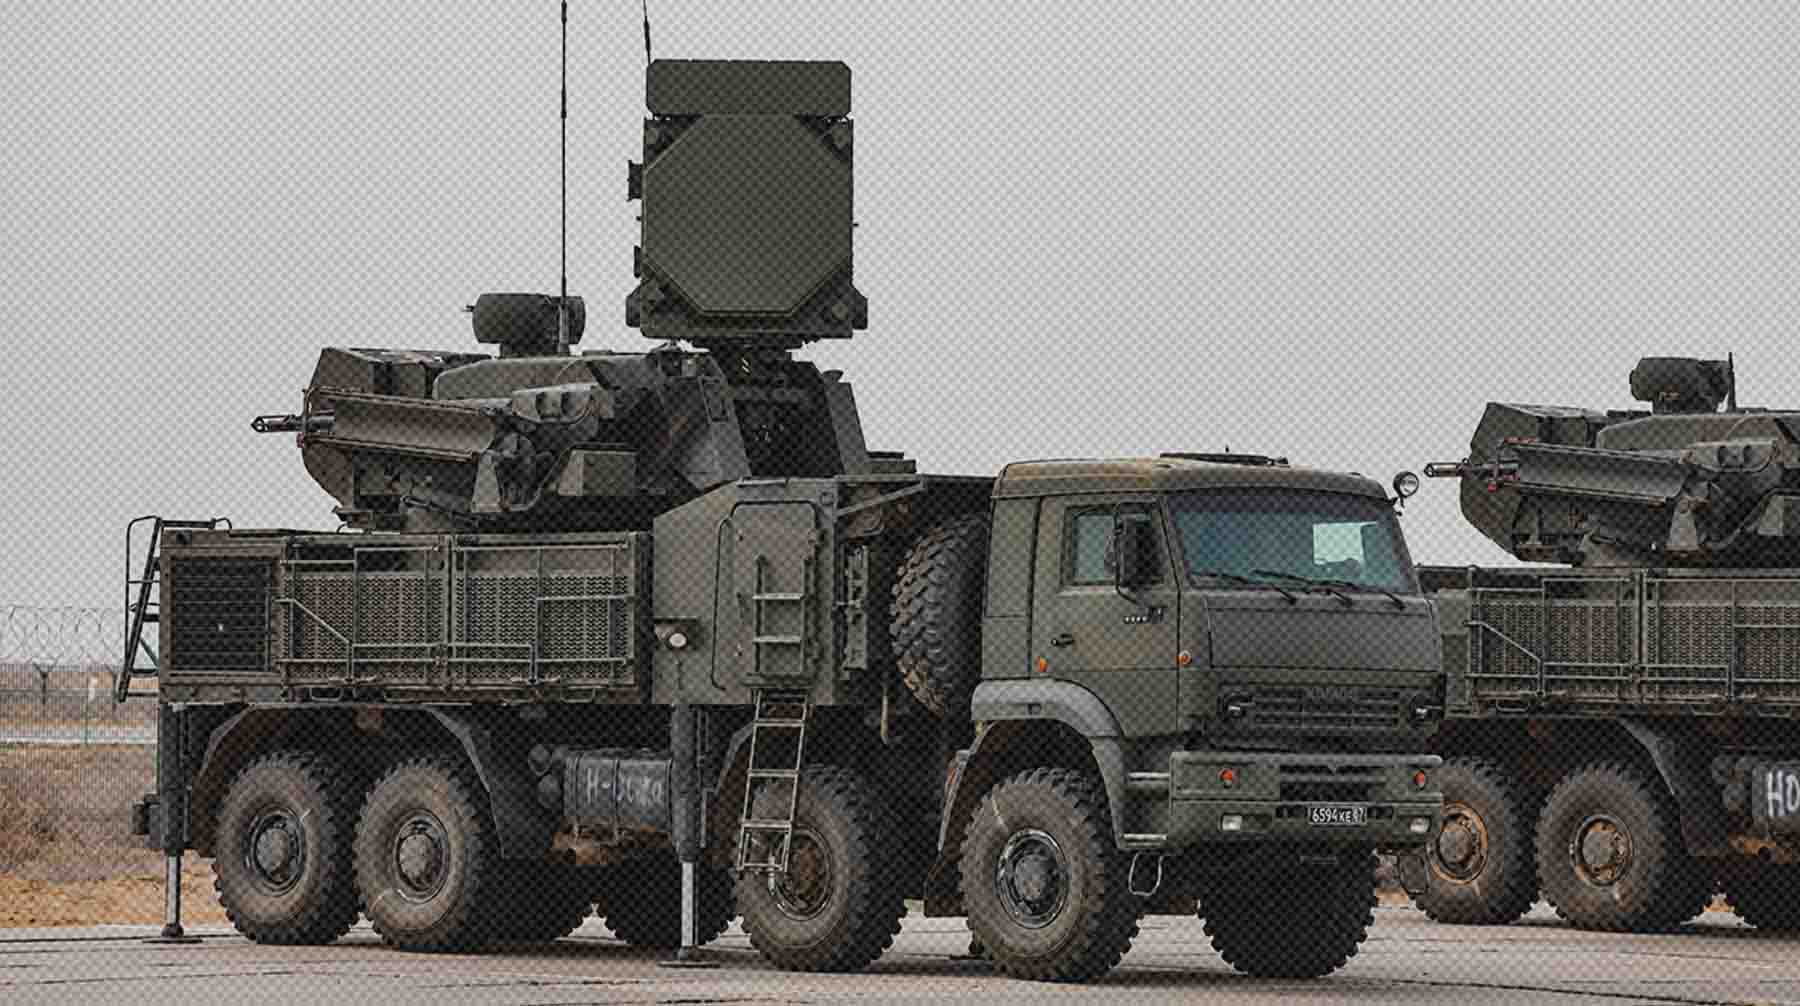 Dailystorm - В Госдуме поддержали идею об ужесточении ответственности за публикацию фото работы систем ПВО